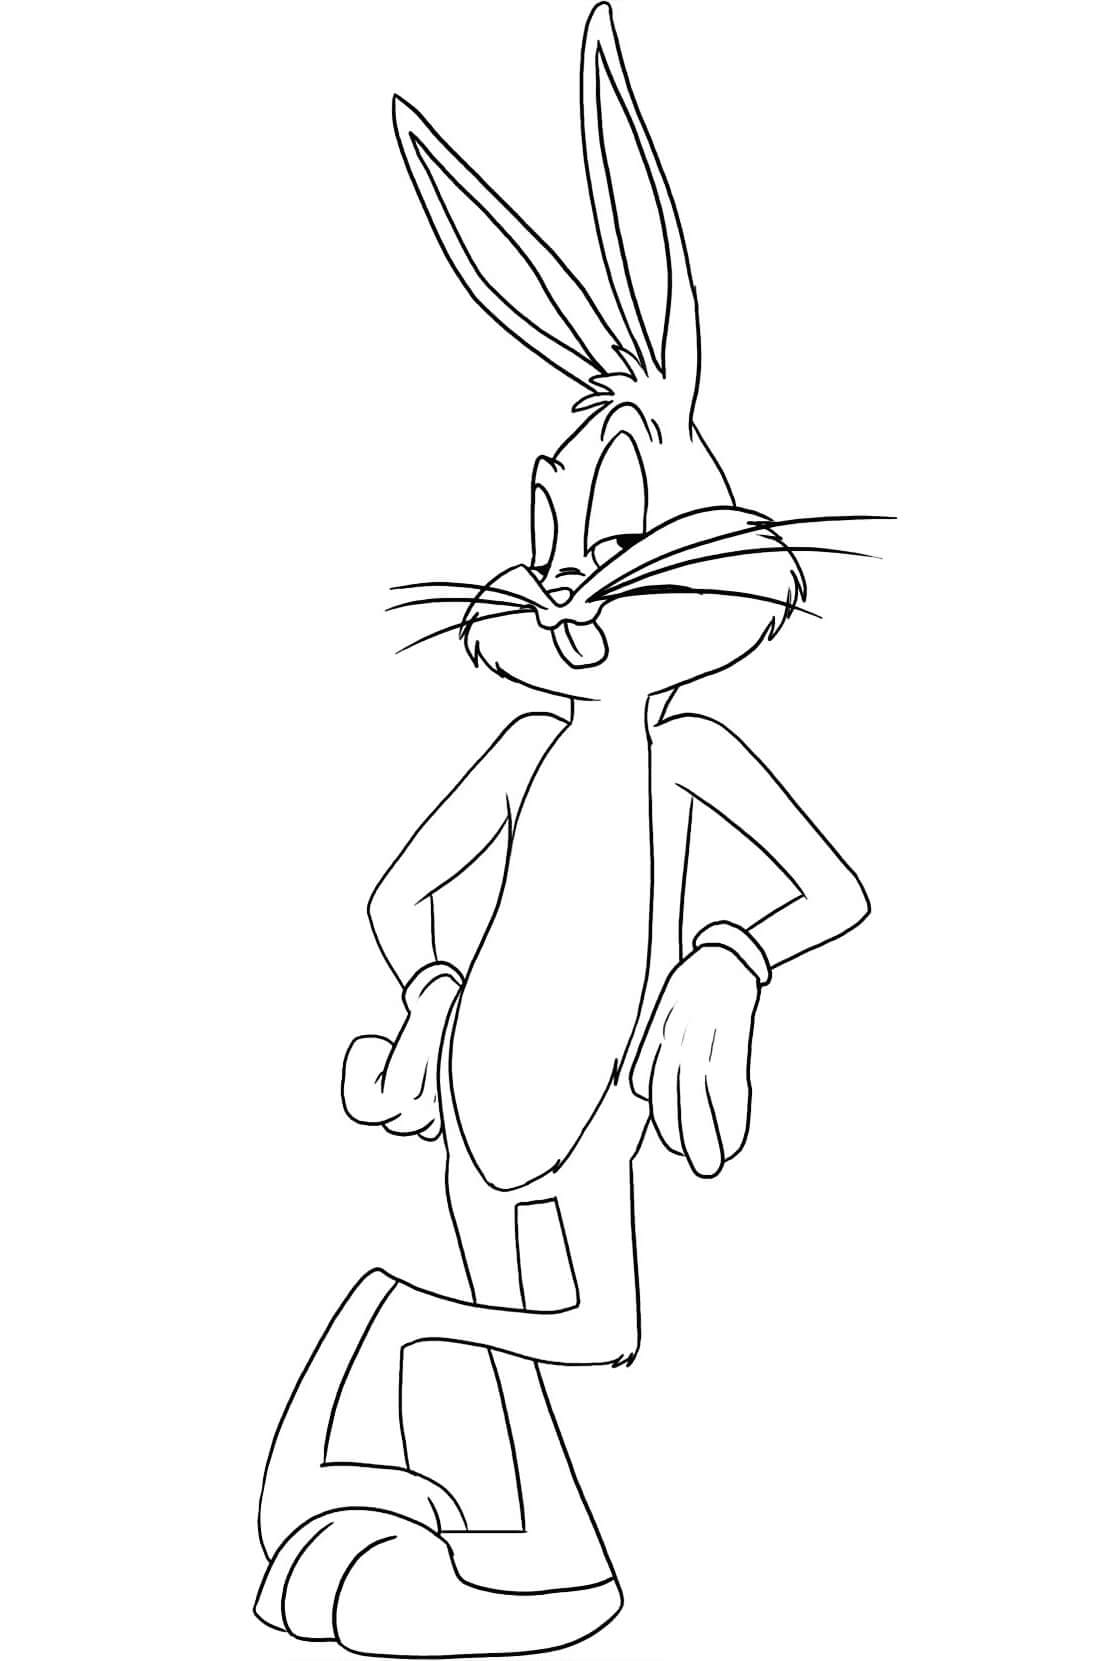 Bugs Bunny de Looney Tunes